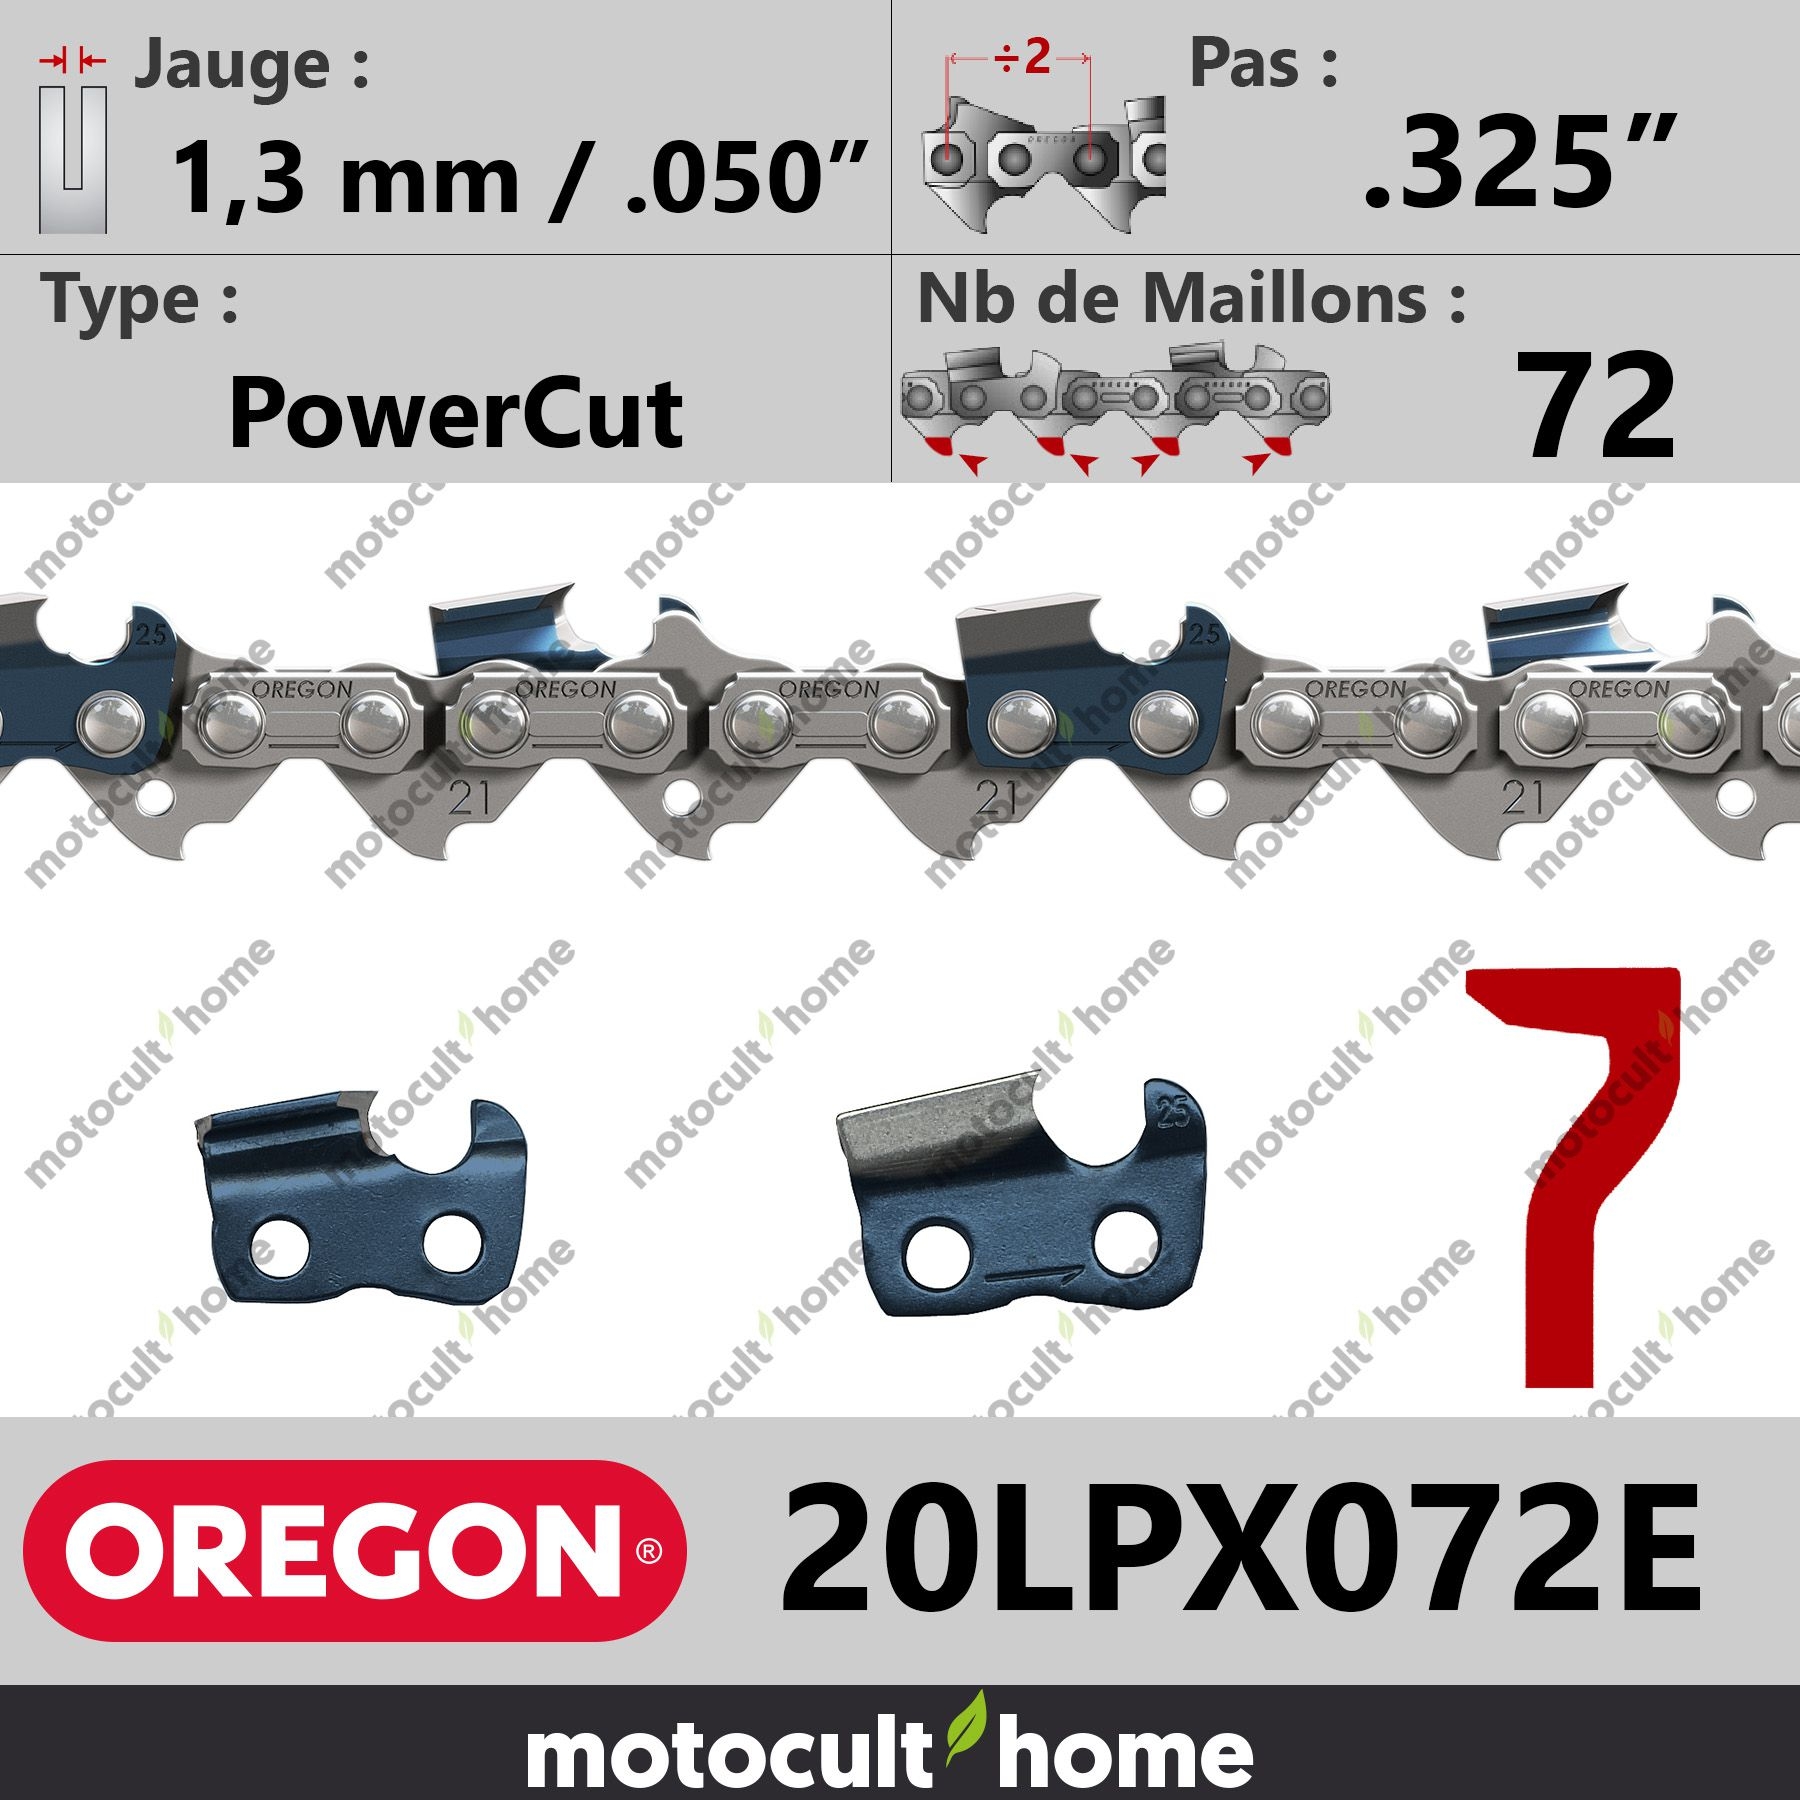 Chaîne de Tronçonneuse Oregon 20LPX072E PowerCut .325 1,3 mm 72 maillons